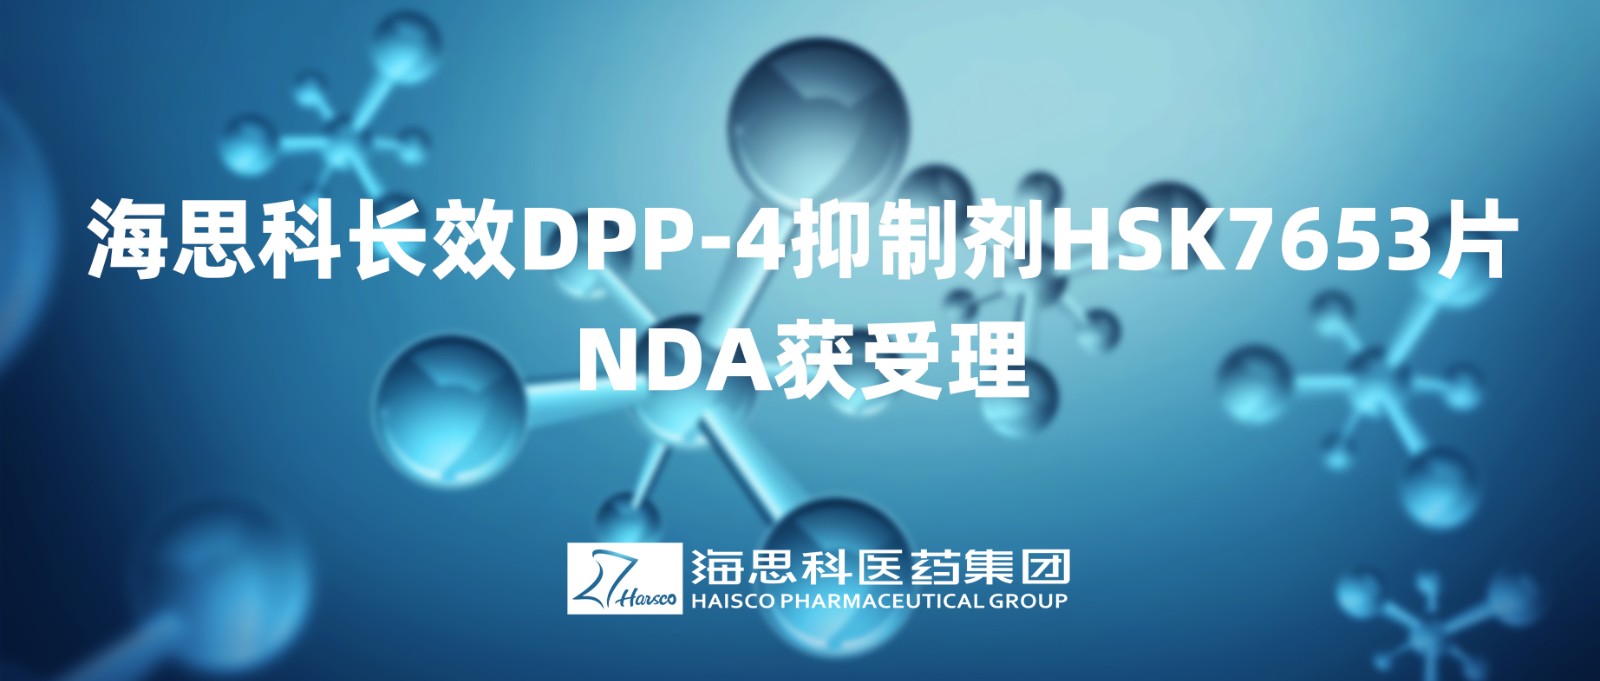 澳门在线娱乐太阳集团长效DPP-4抑制剂HSK7653片NDA获得受理